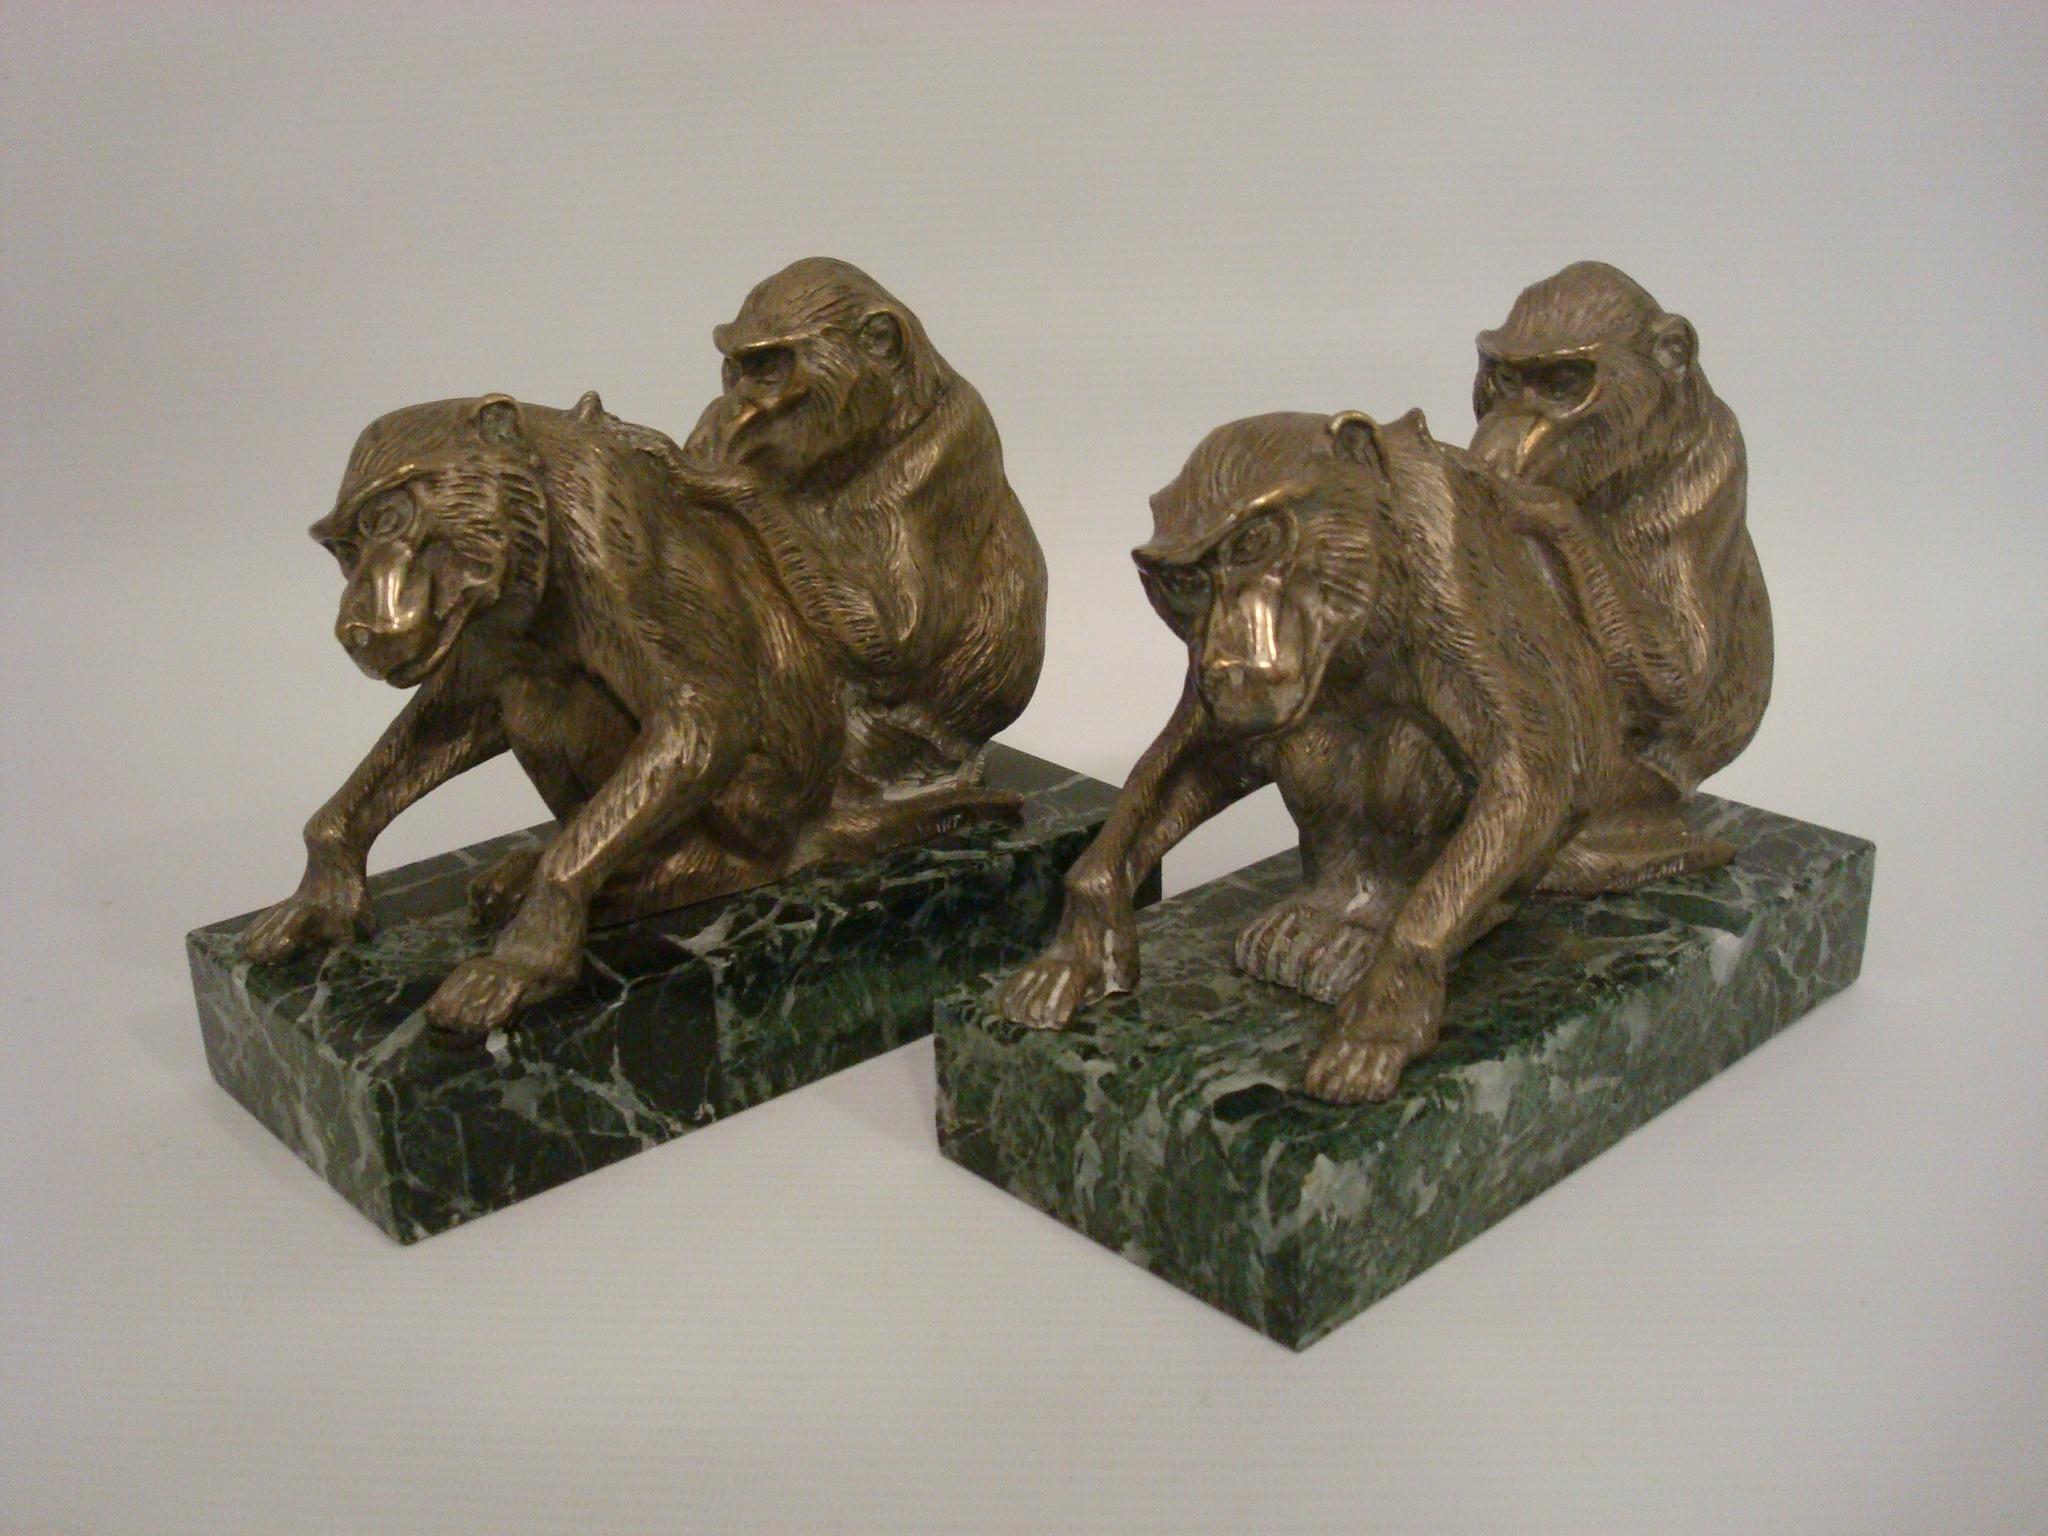 Très joli serre-livres Art Déco, paire de figures de singe. Montés sur des socles en marbre vert. Parfait pour les livres lourds. Signé Bourcart, France, vers 1925. Les singes ressemblent à des singes babouins d'Olive.